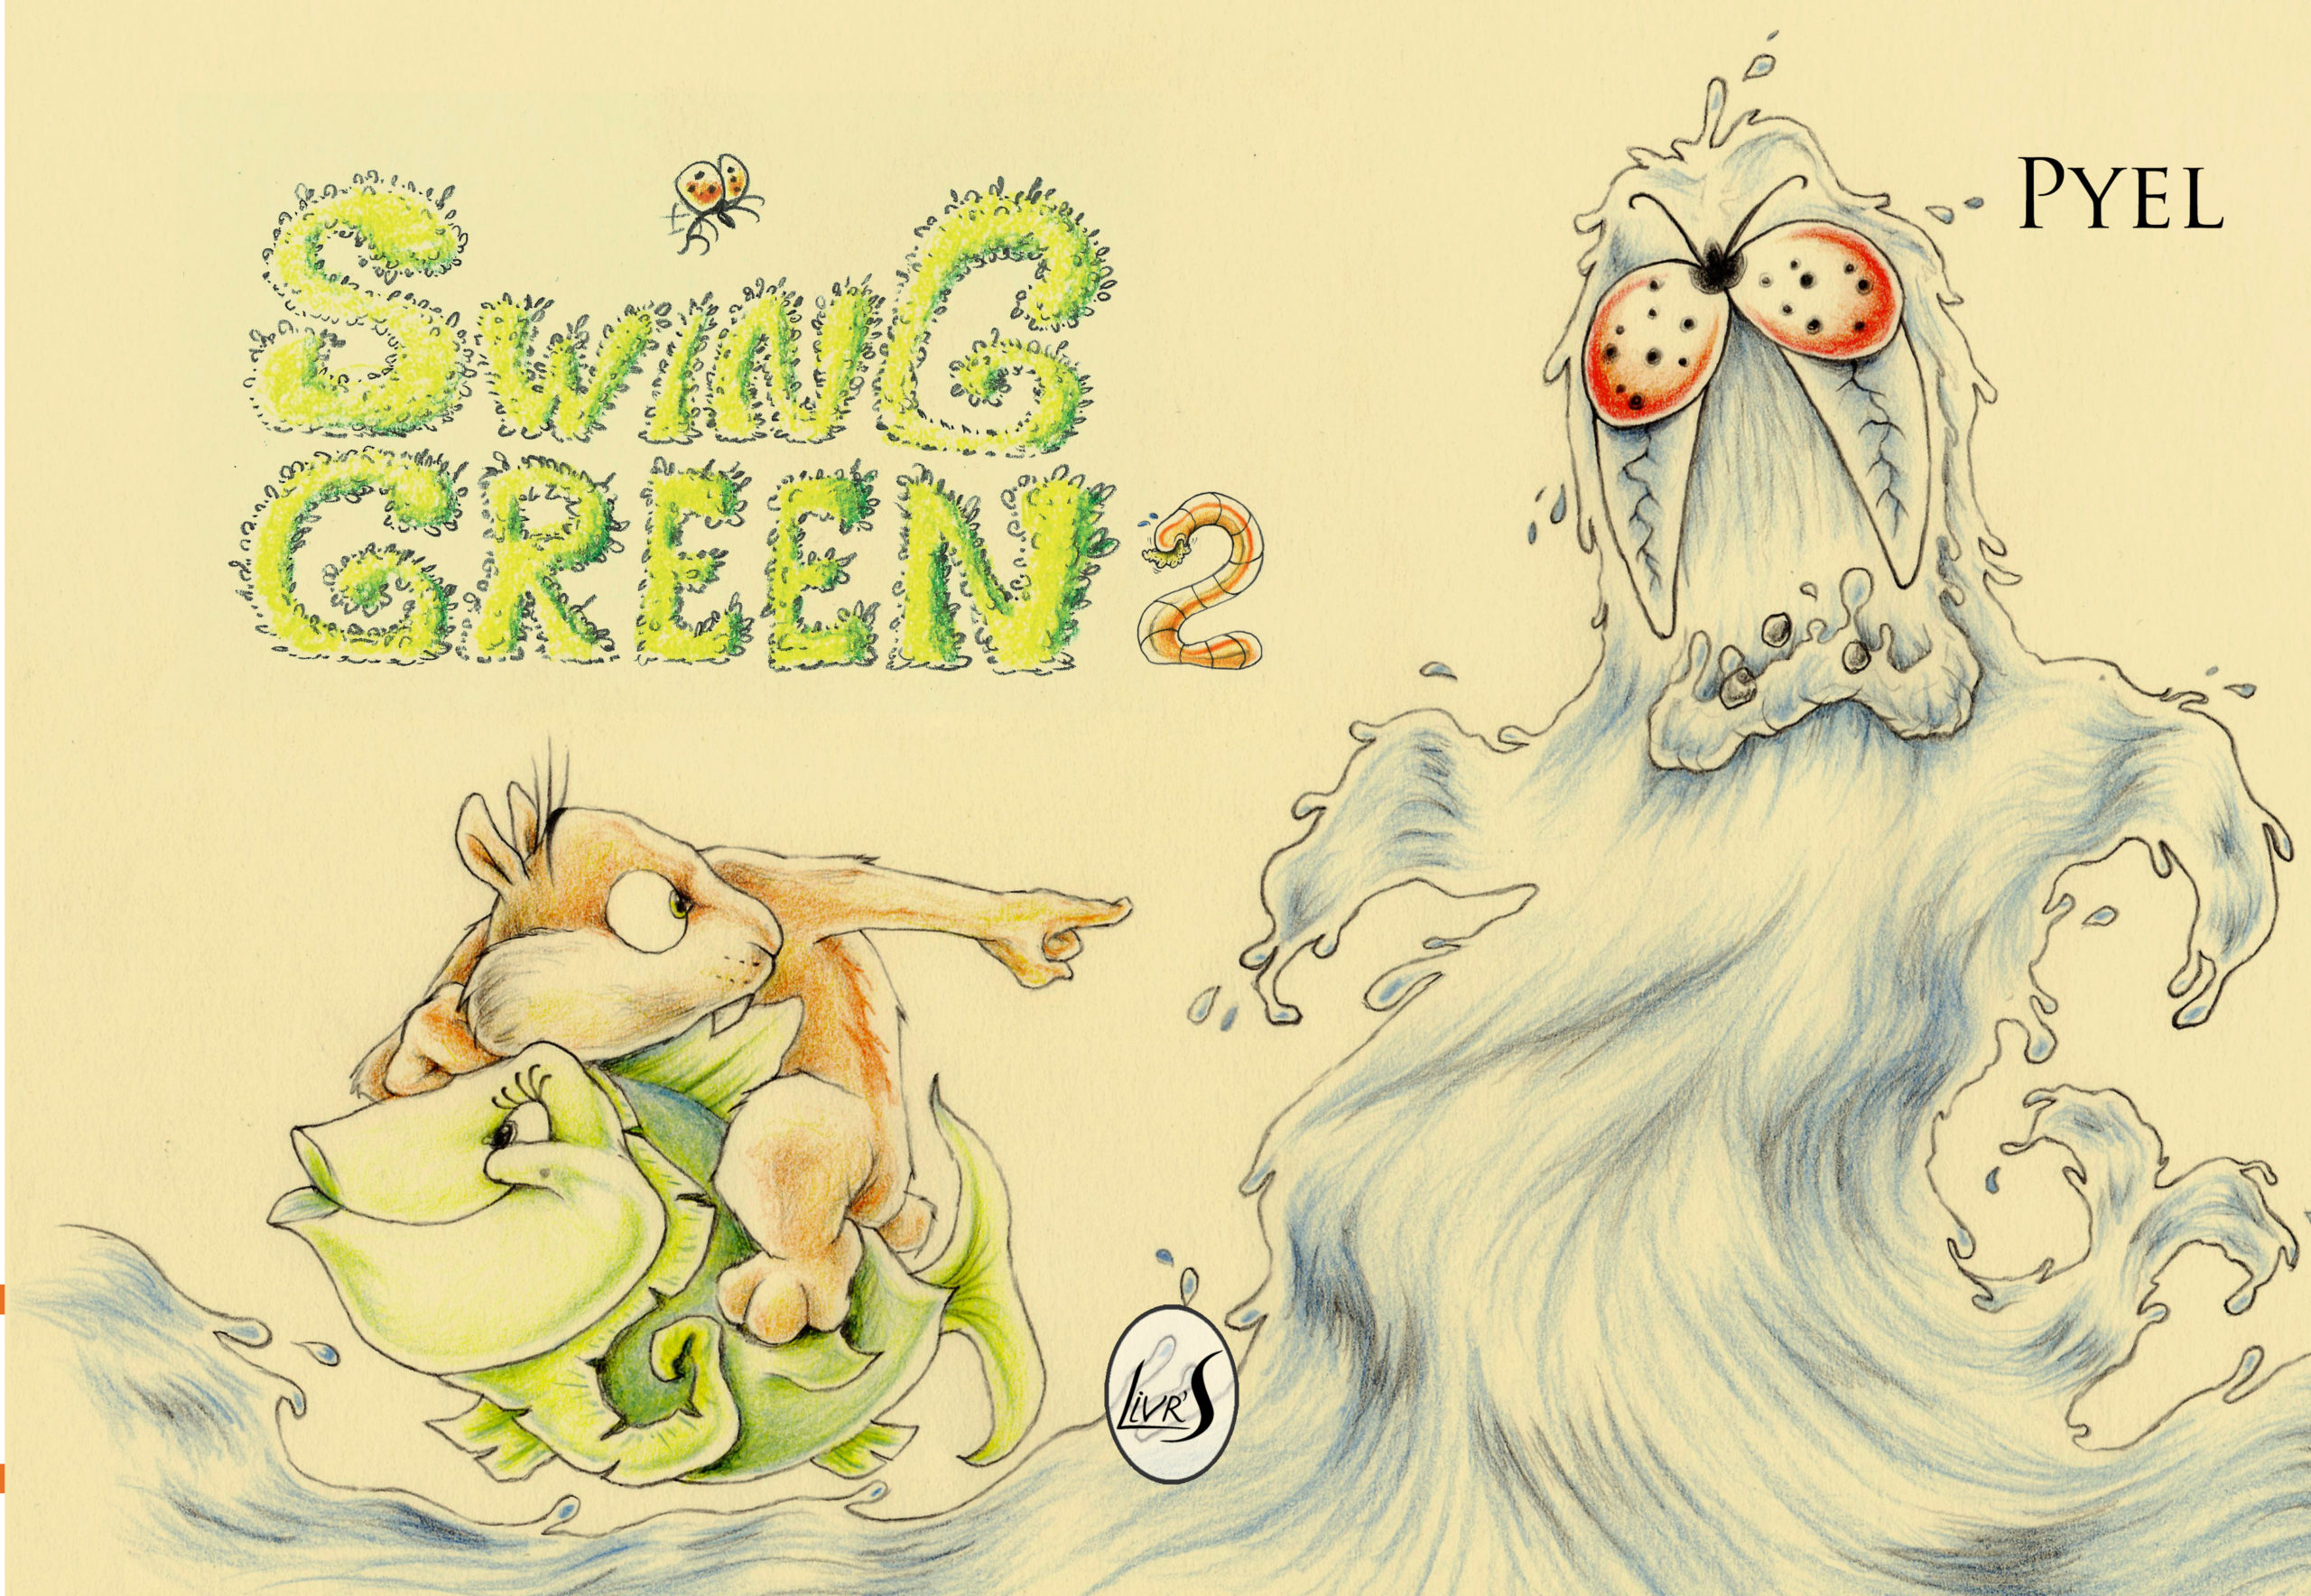 swing green 2